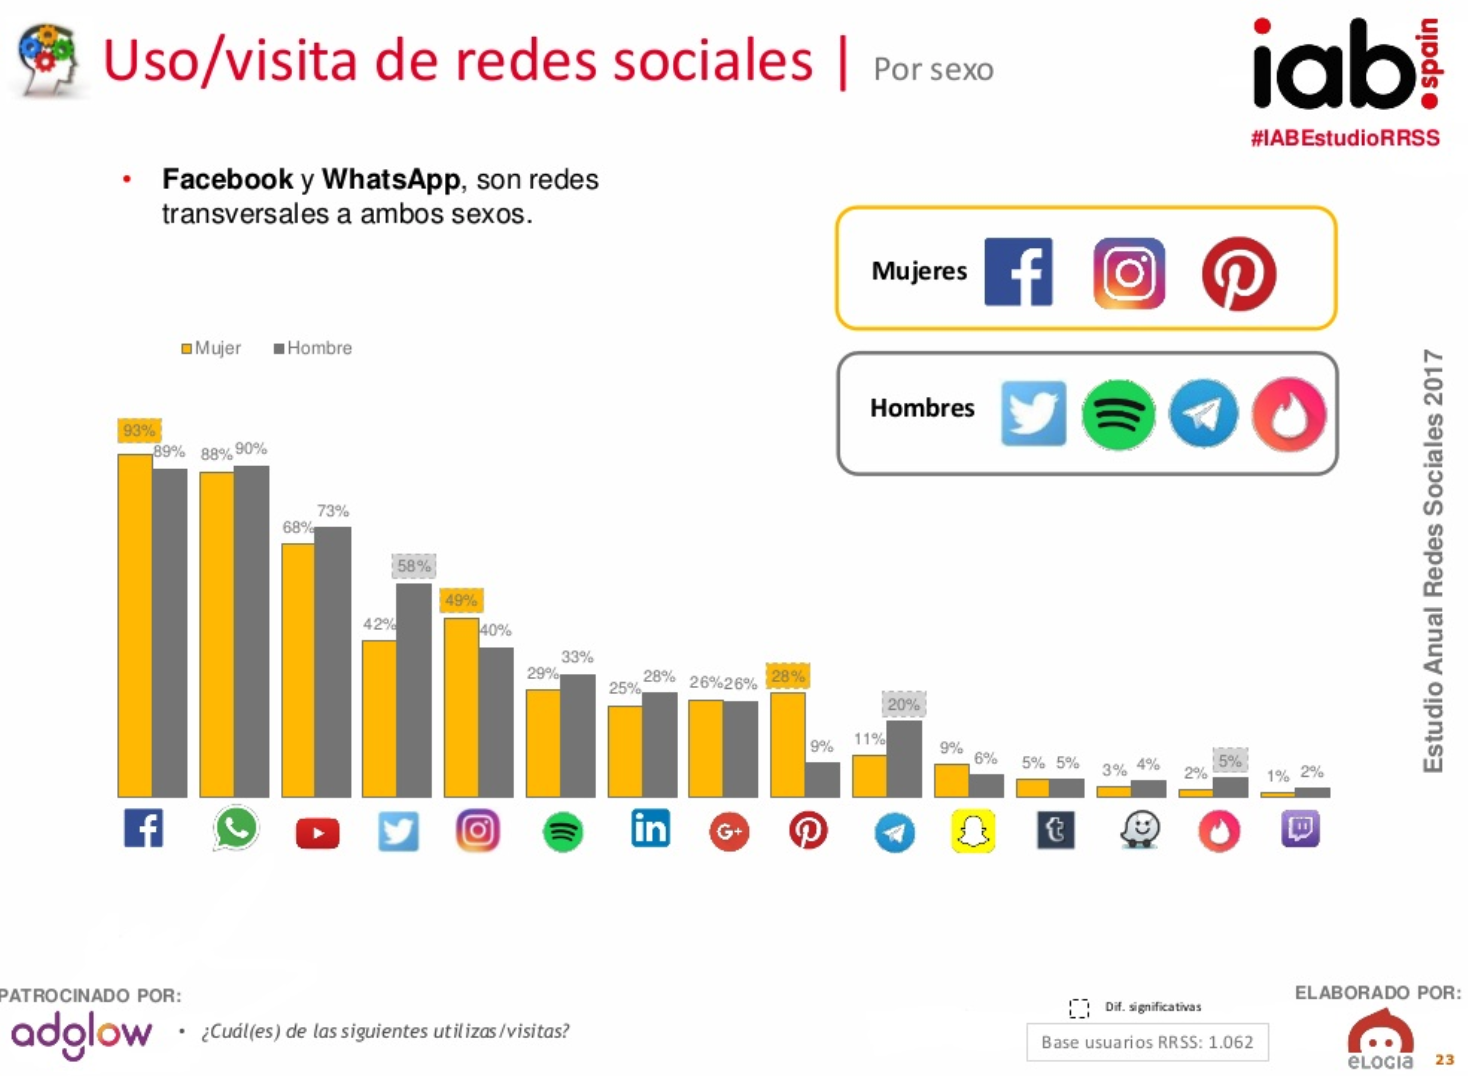 Sexo usuarios redes sociales en España en 2017